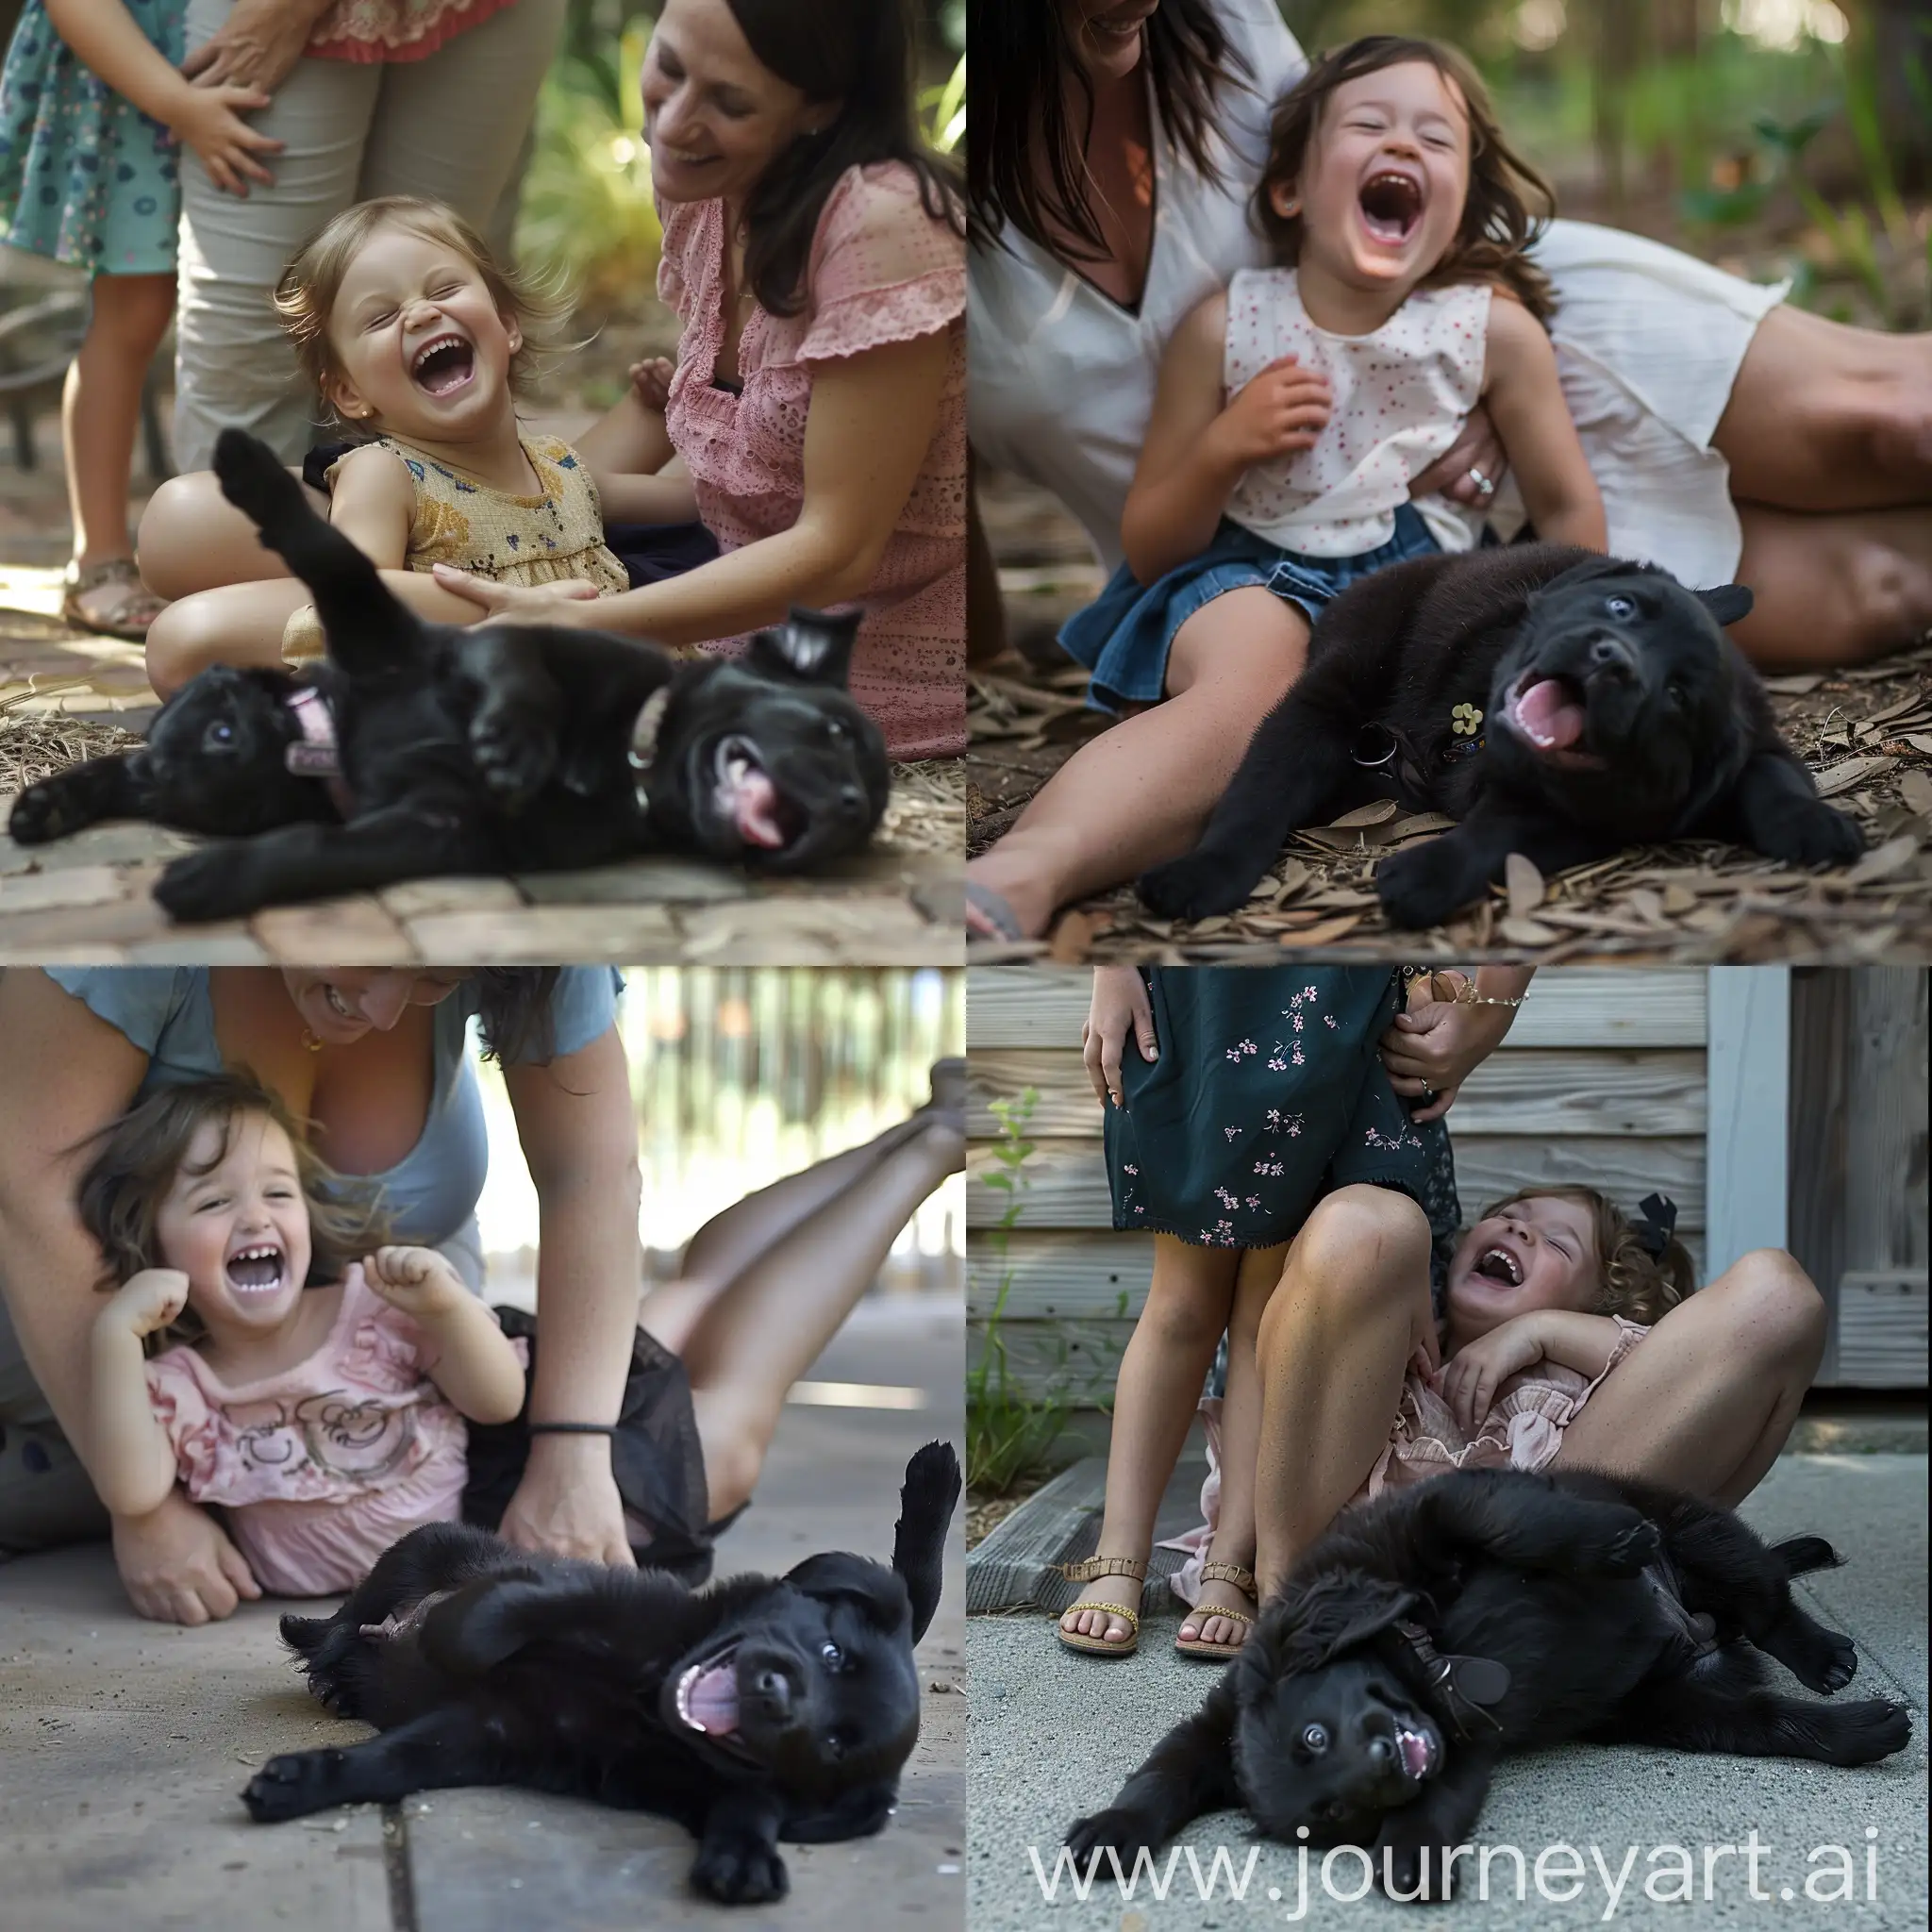 一个小女孩正在妈妈的怀抱中大笑，地上有一只黑色的小狗在露着肚子打滚。